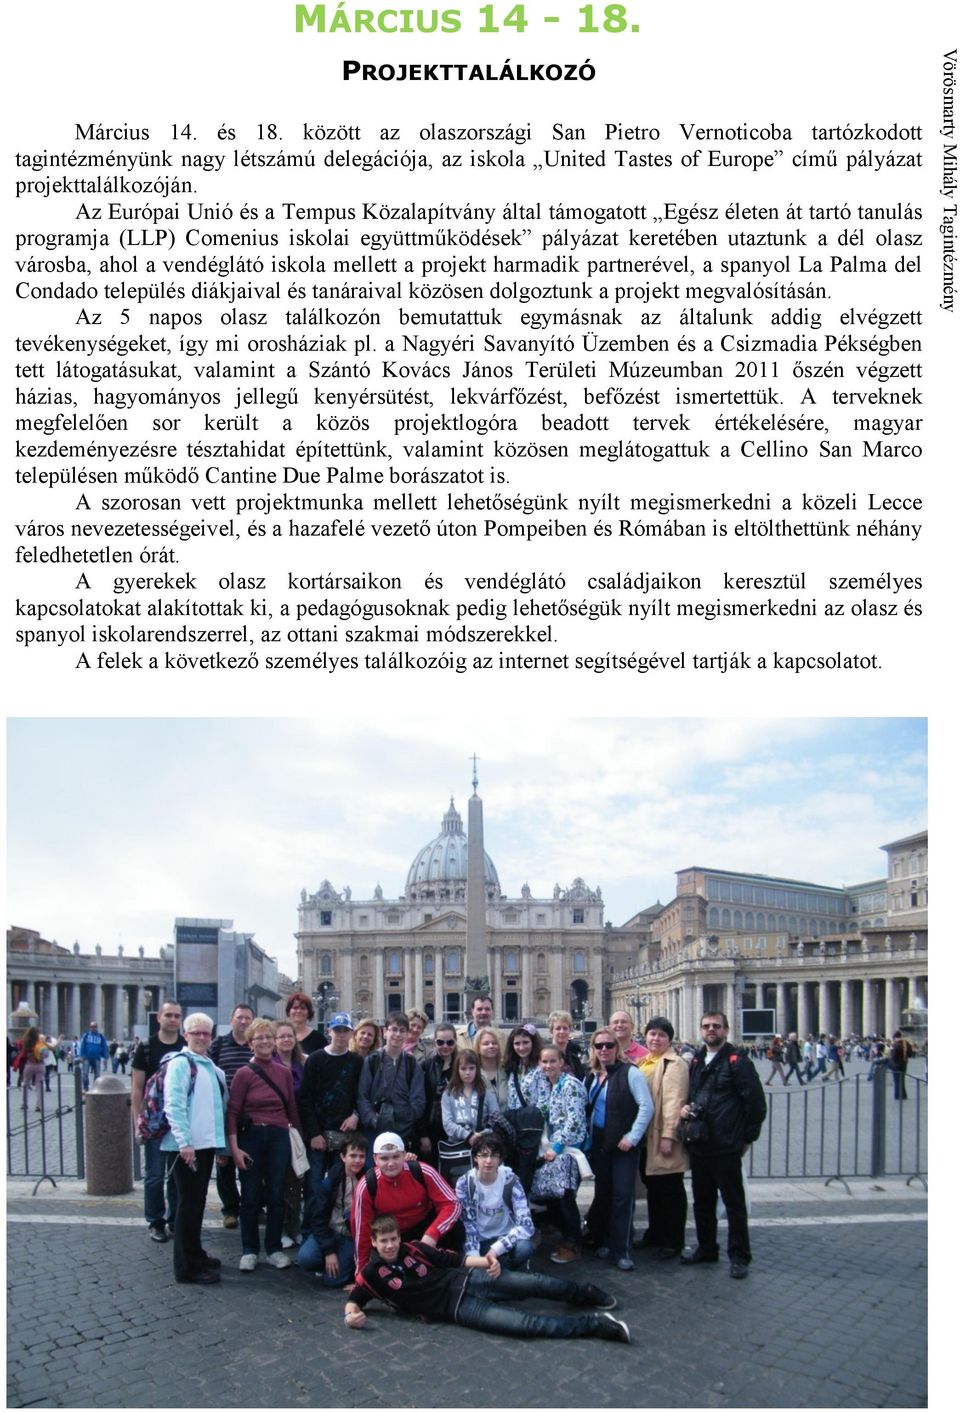 Az Európai Unió és a Tempus Közalapítvány által támogatott Egész életen át tartó tanulás programja (LLP) Comenius iskolai együttműködések pályázat keretében utaztunk a dél olasz városba, ahol a